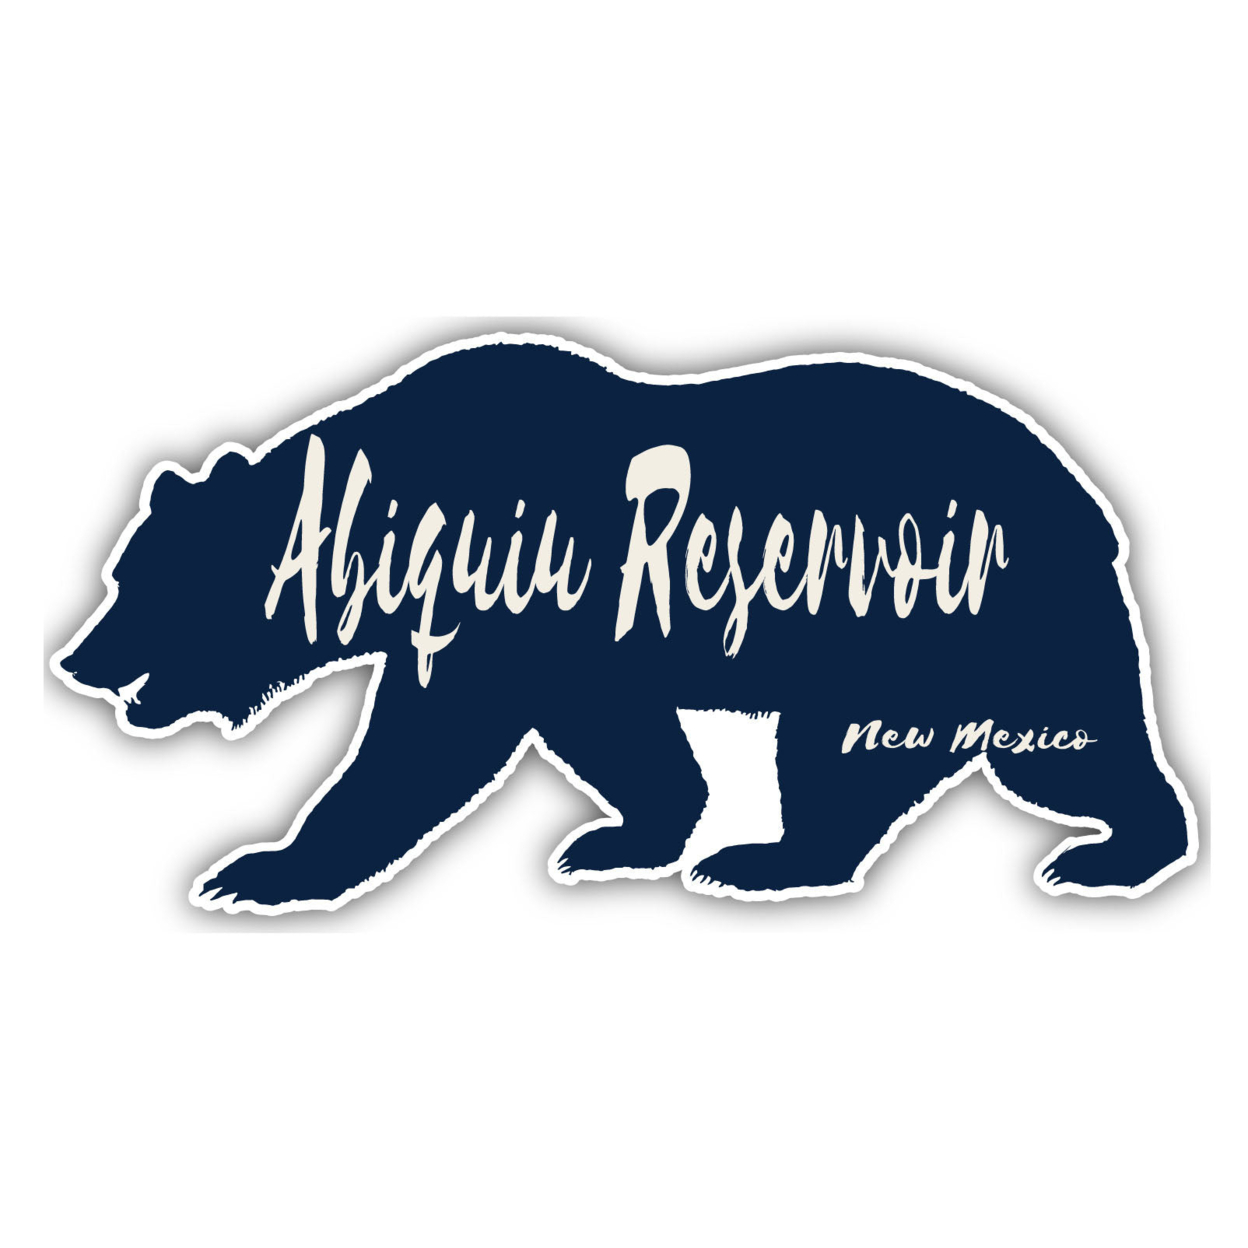 Abiquiu Reservoir New Mexico Souvenir Decorative Stickers (Choose Theme And Size) - Single Unit, 4-Inch, Bear